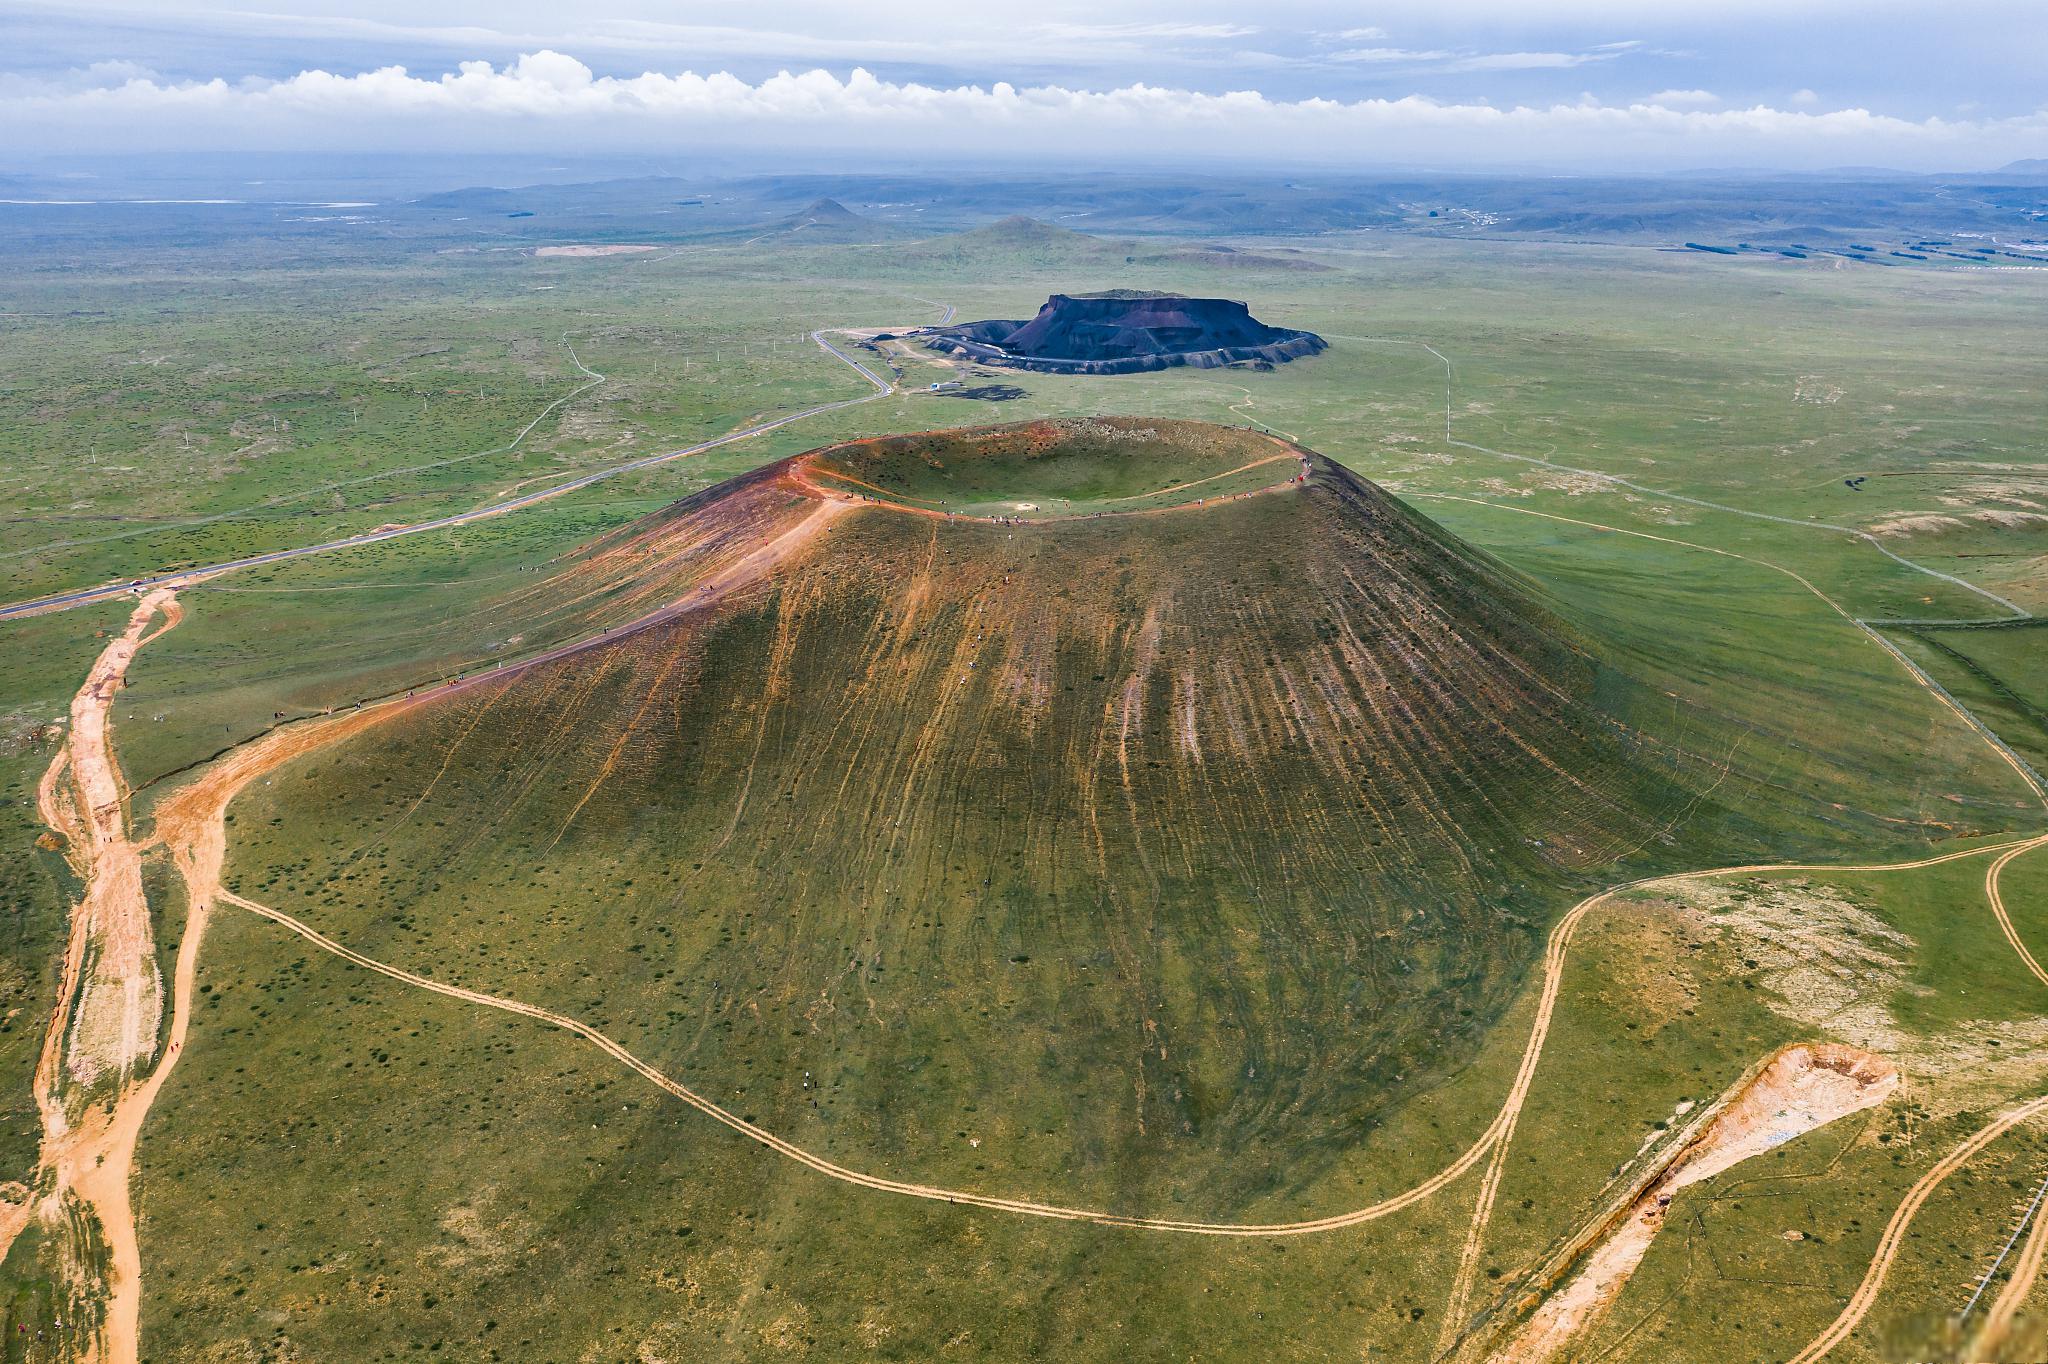 乌兰哈达火山地质公园位于内蒙古自治区乌兰察布市,拥有众多火山和